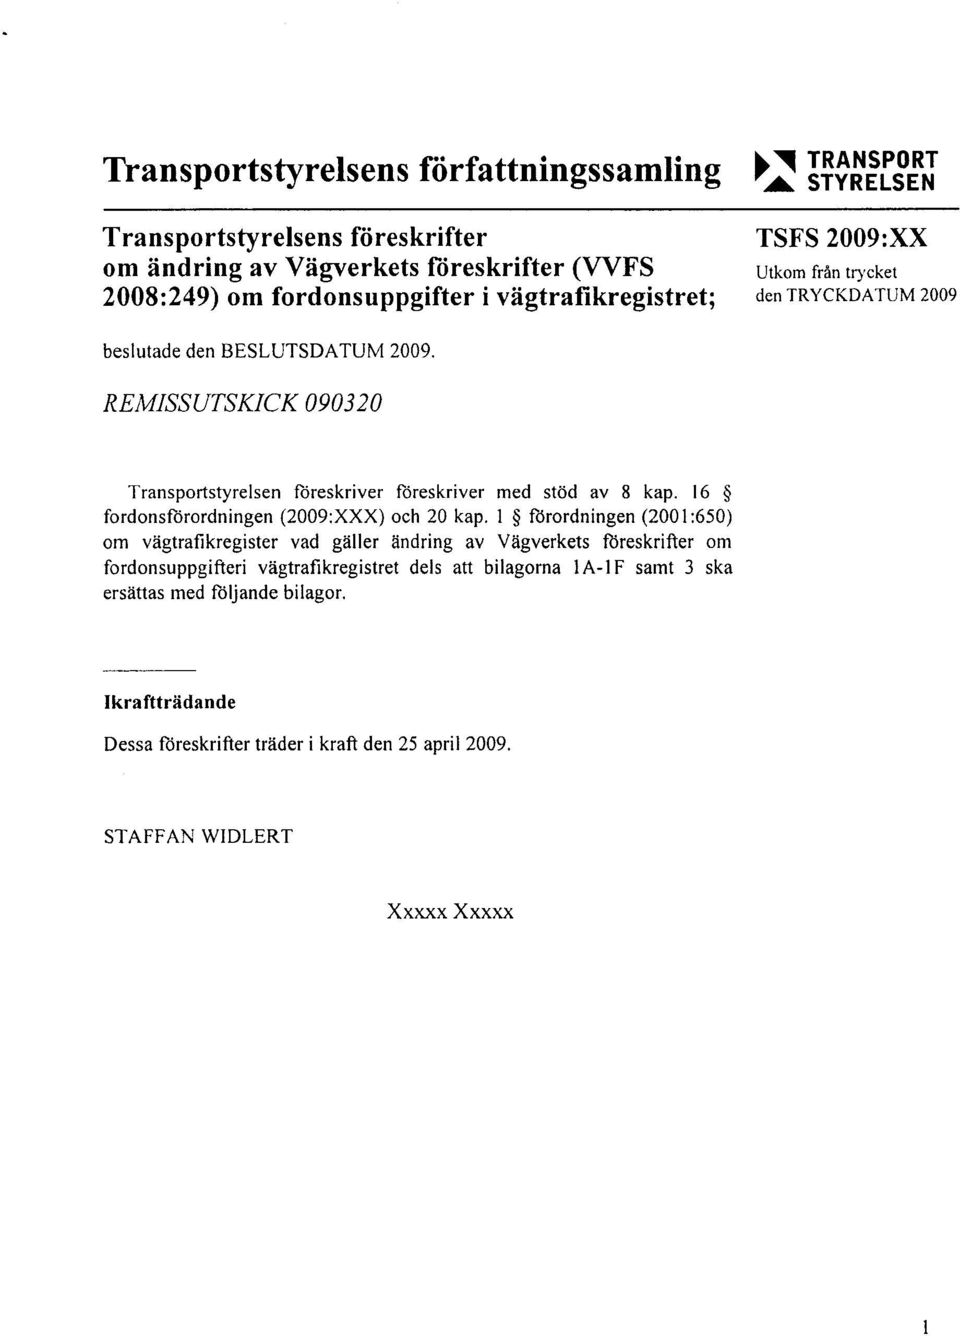 ivägtrafikregistret; Utkom från trycket den TRYCKDATUM 2009 TransportstyreIsen föreskriver föreskriver med stöd av 8 kap.